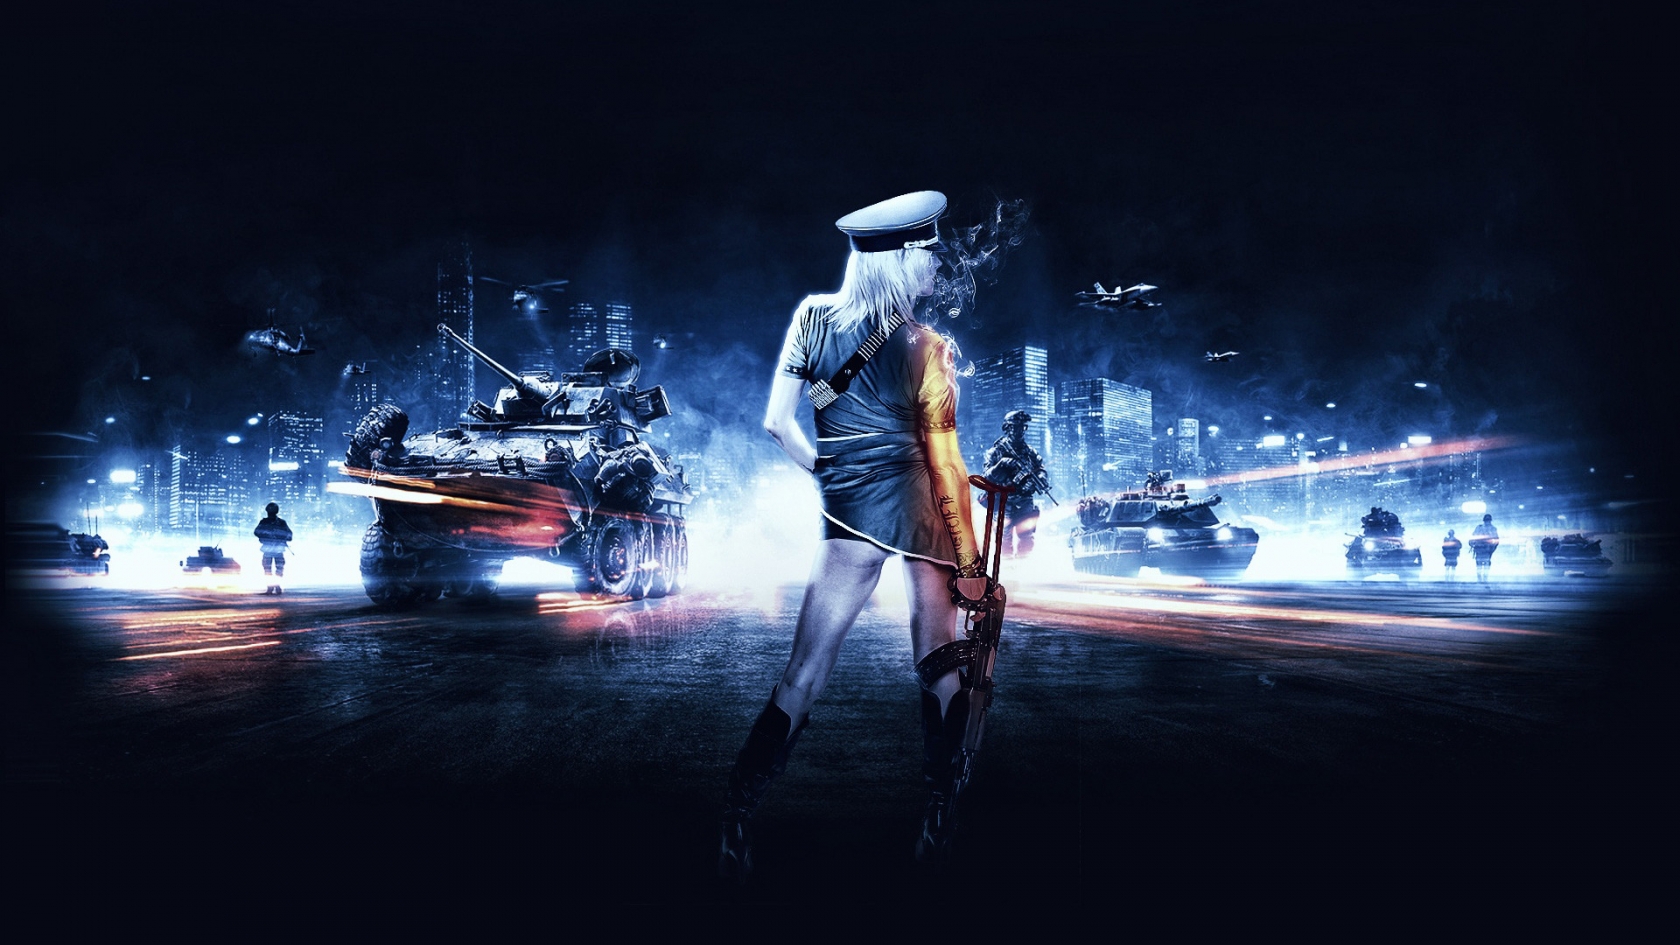 Battlefield 3 Girl for 1680 x 945 HDTV resolution